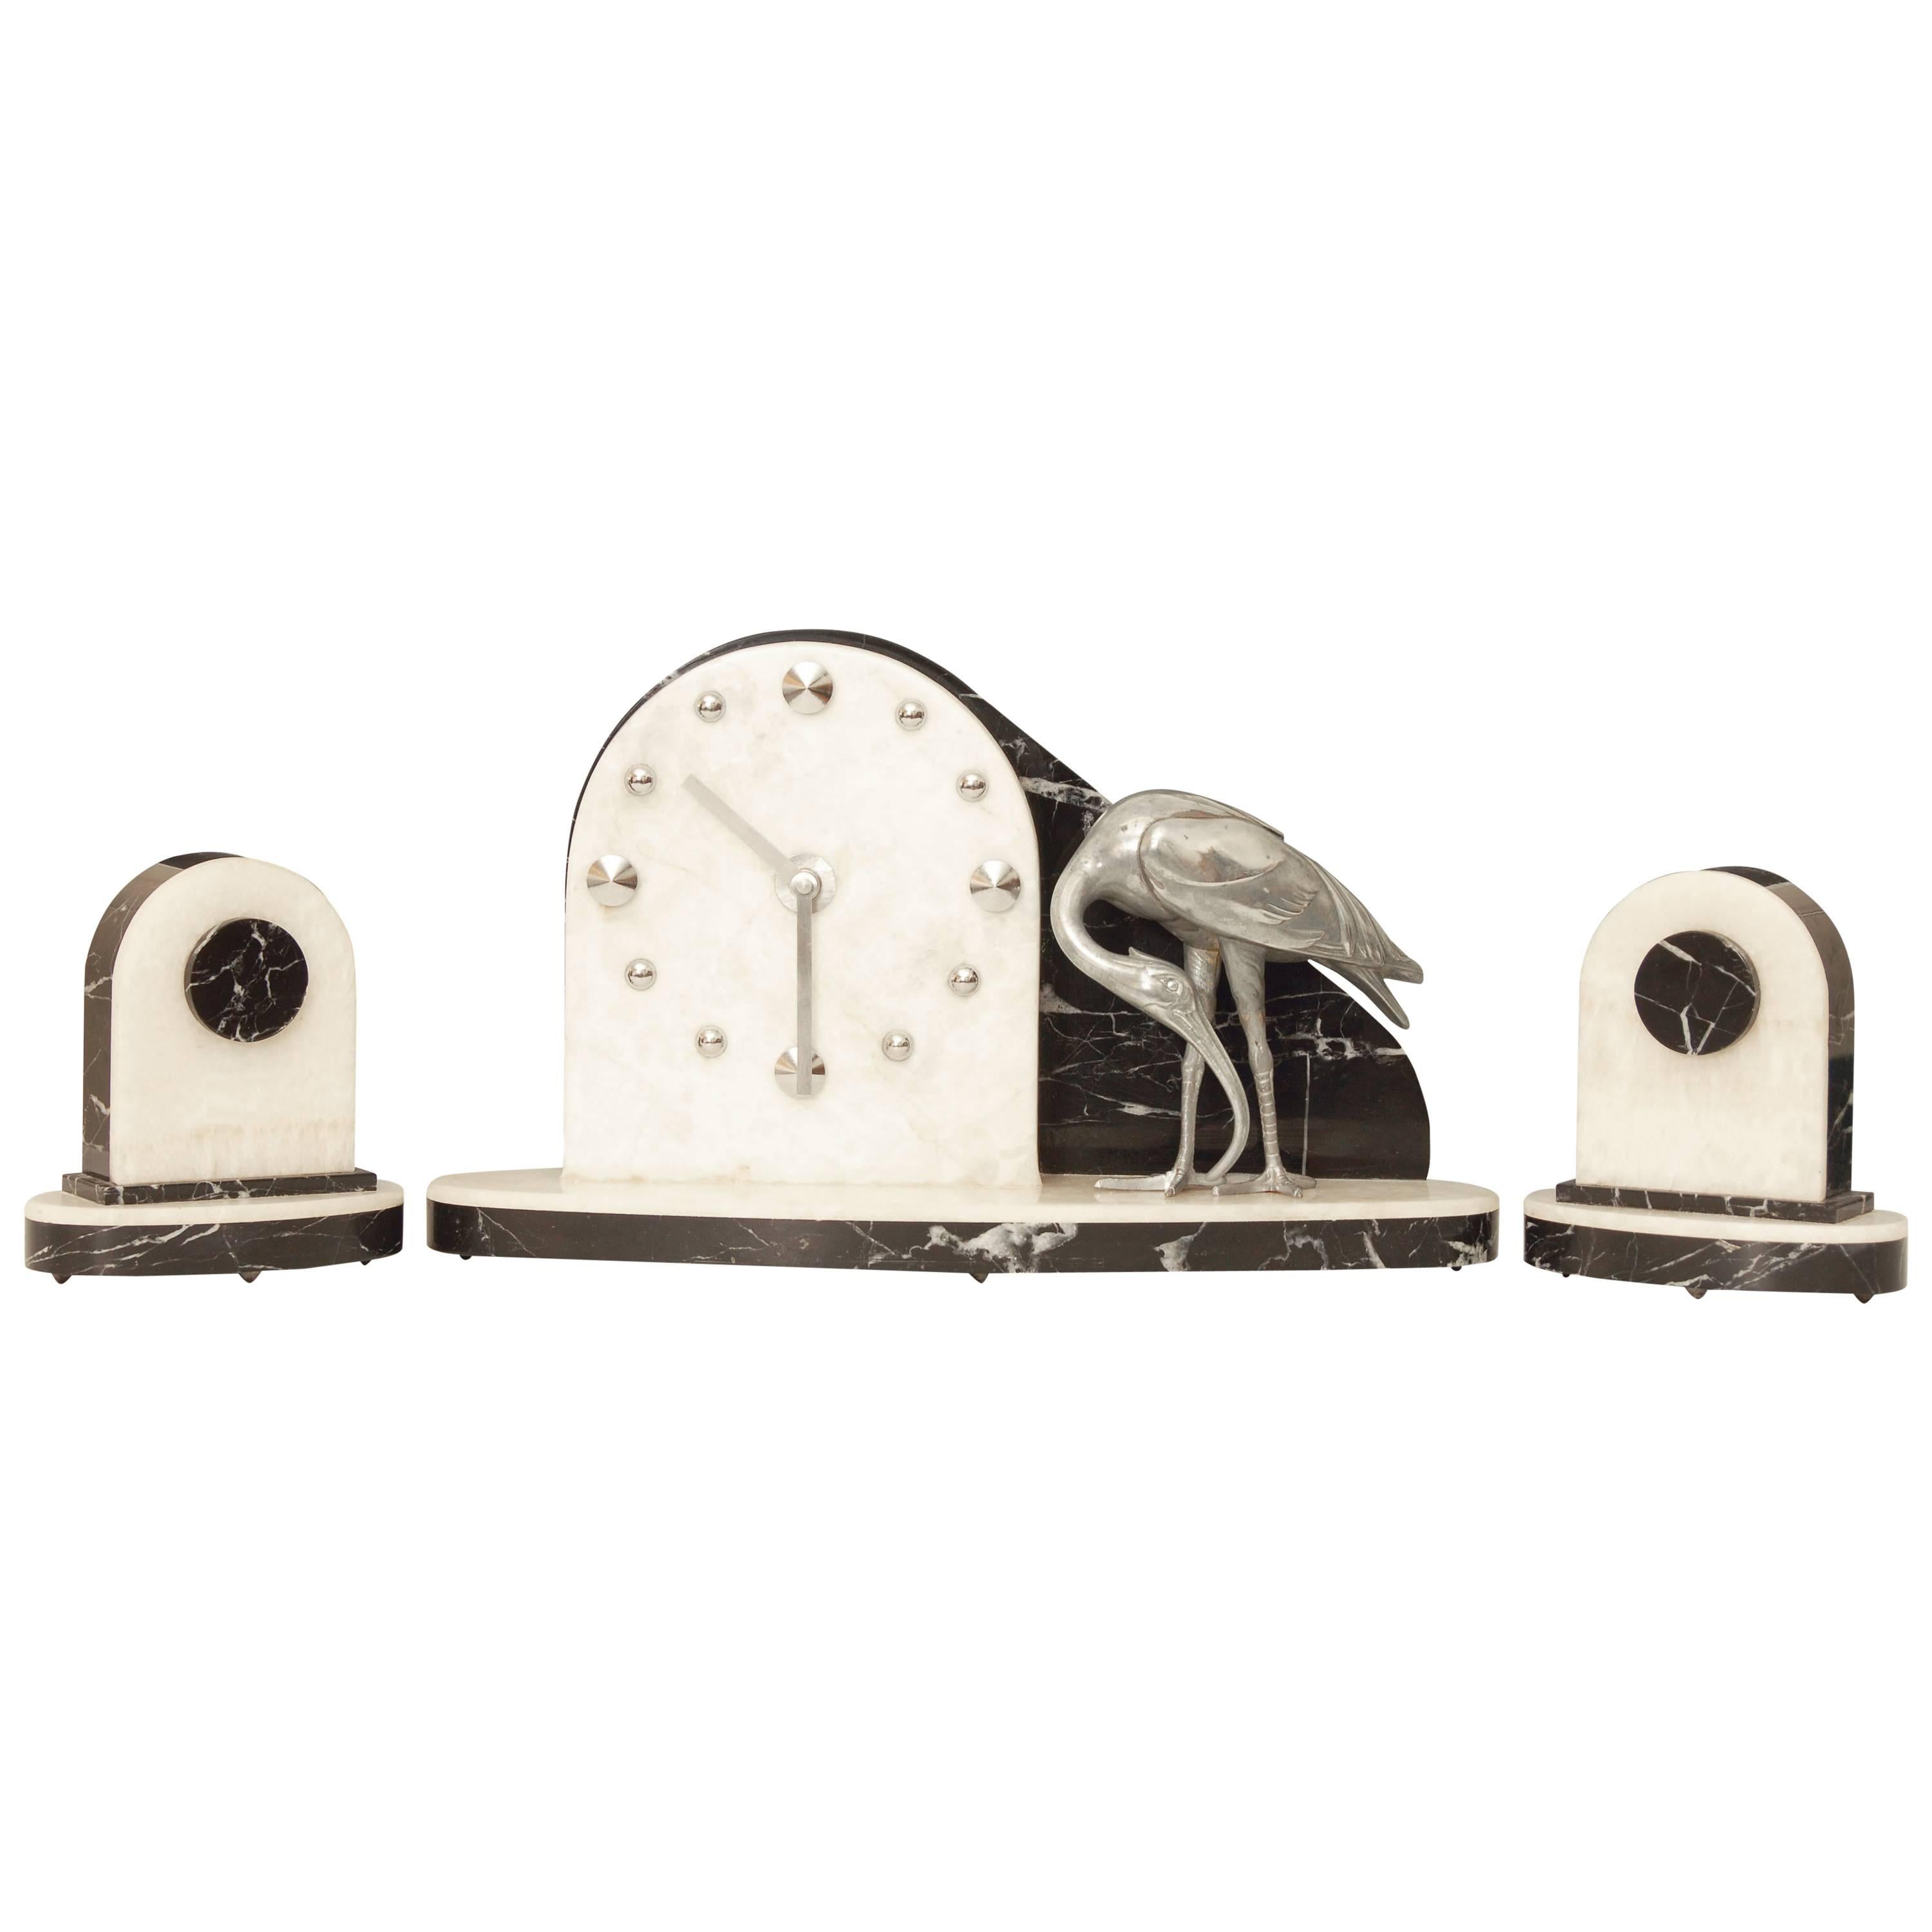 Art Deco Modernist Clock with Matching Garniture Set